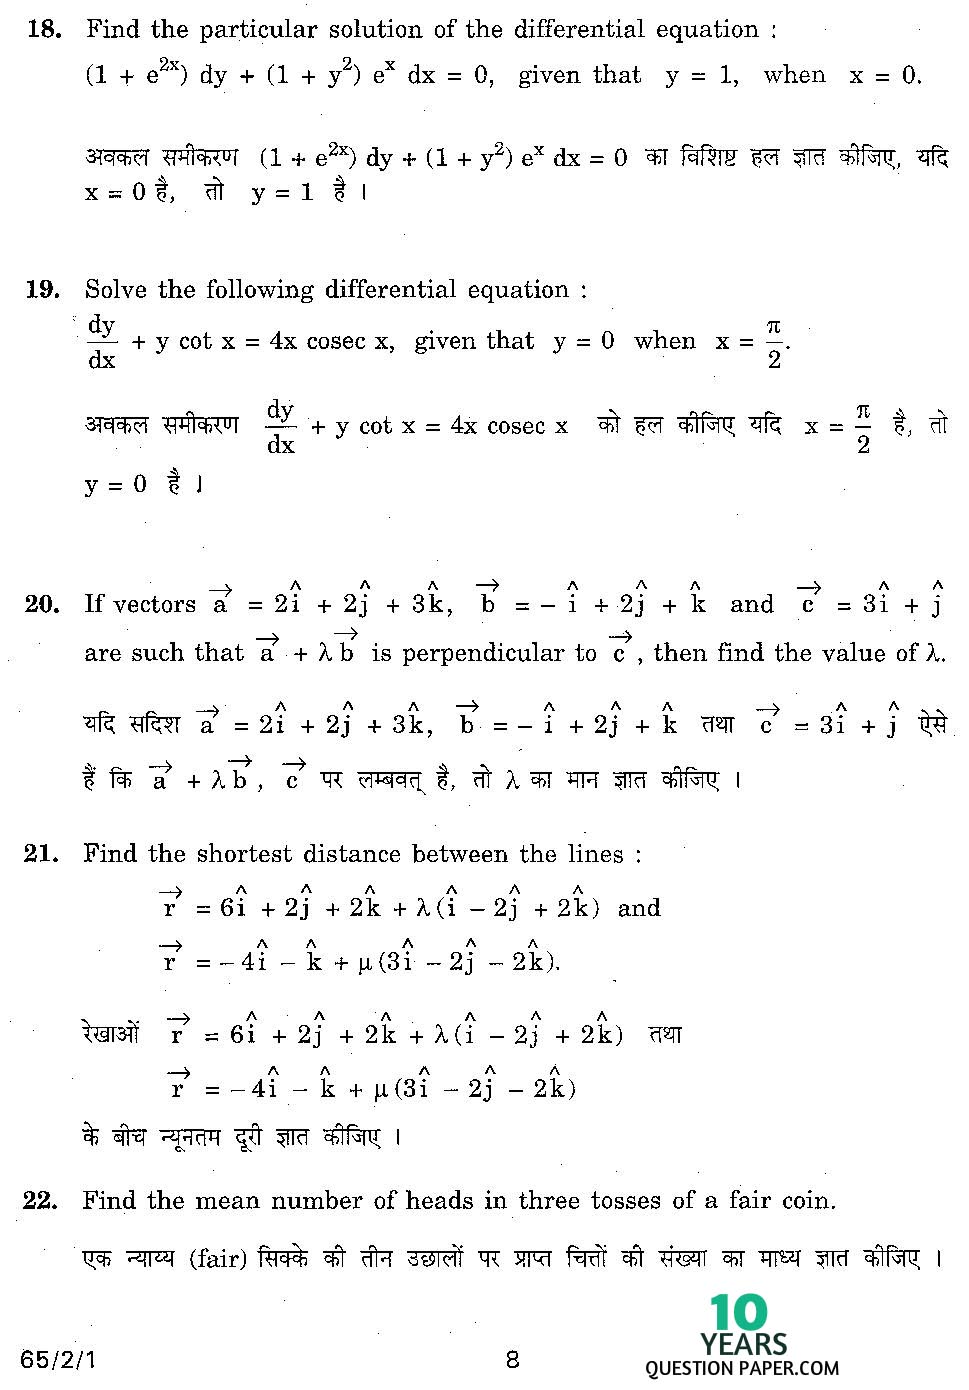 CBSE Class 12 Mathematics 2011 Question Paper